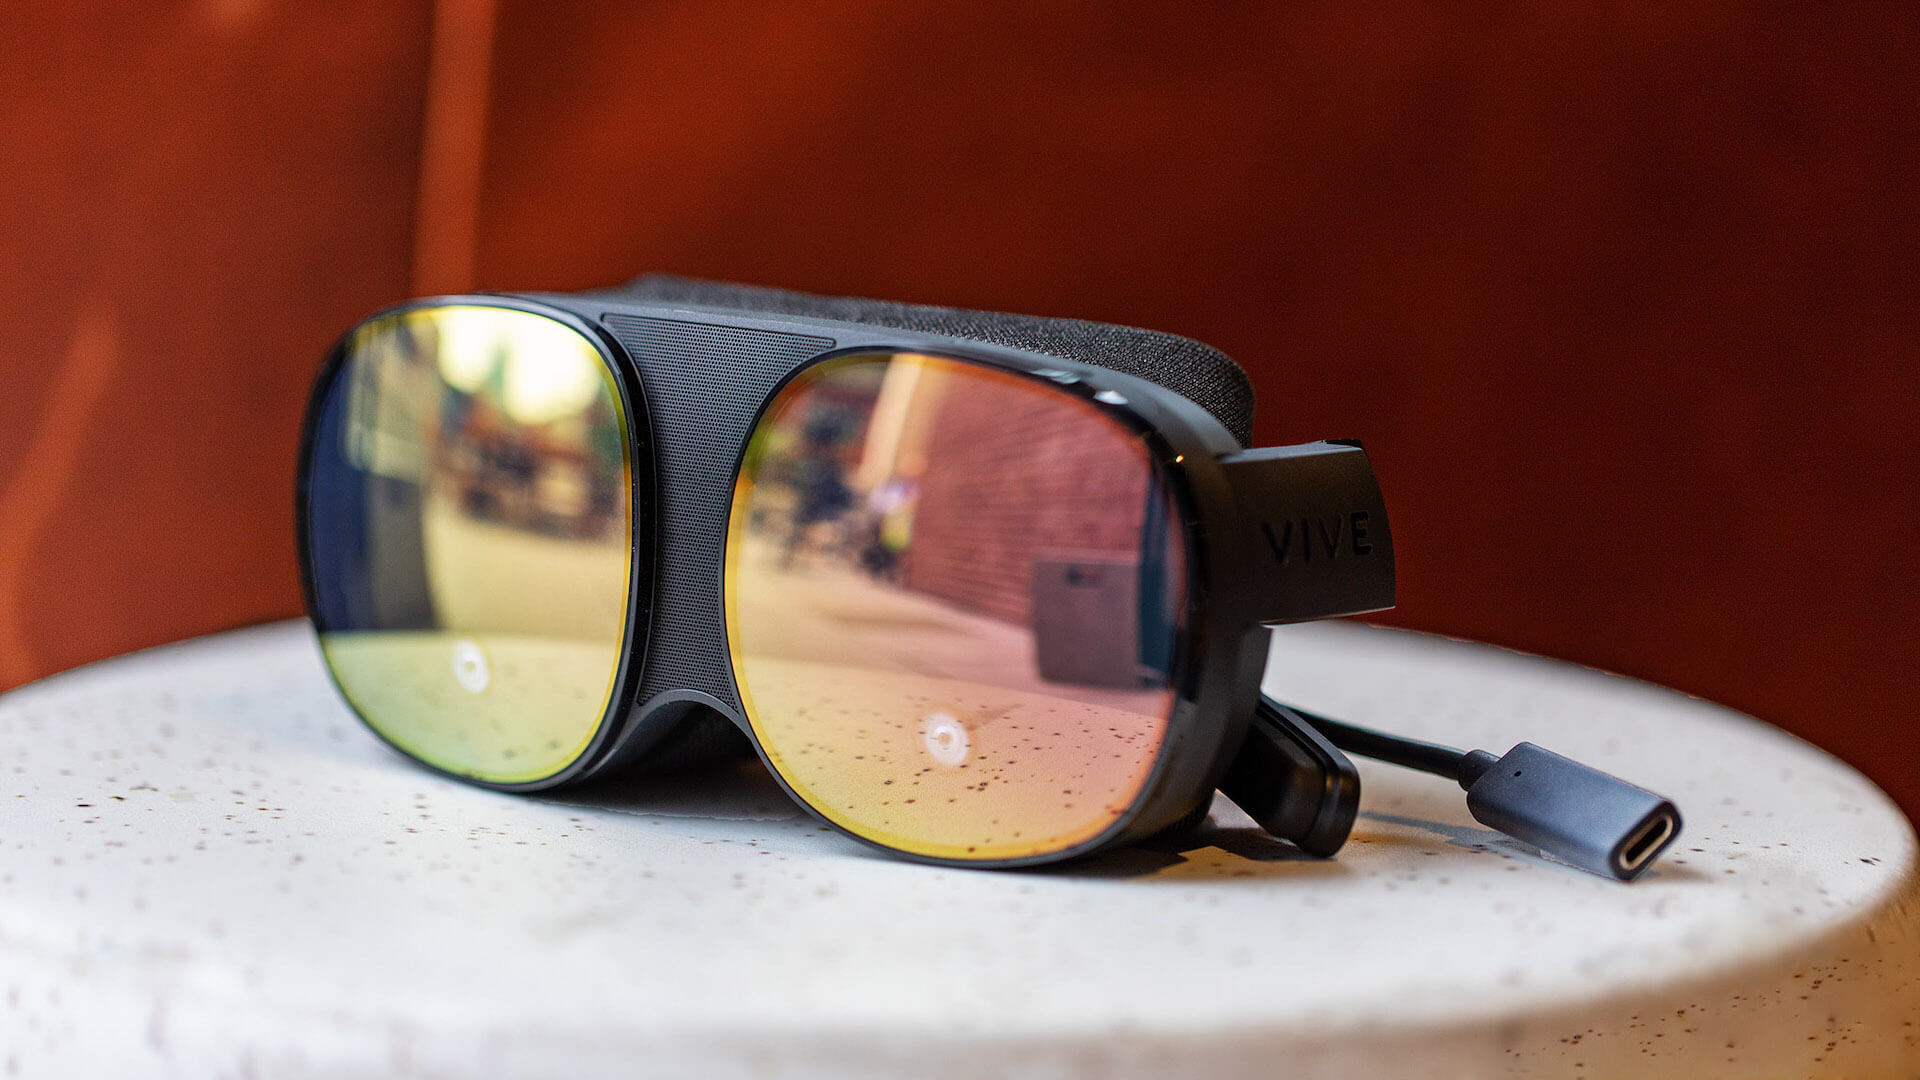 HTC представила VR-очки Vive Flow весом 189 грамм